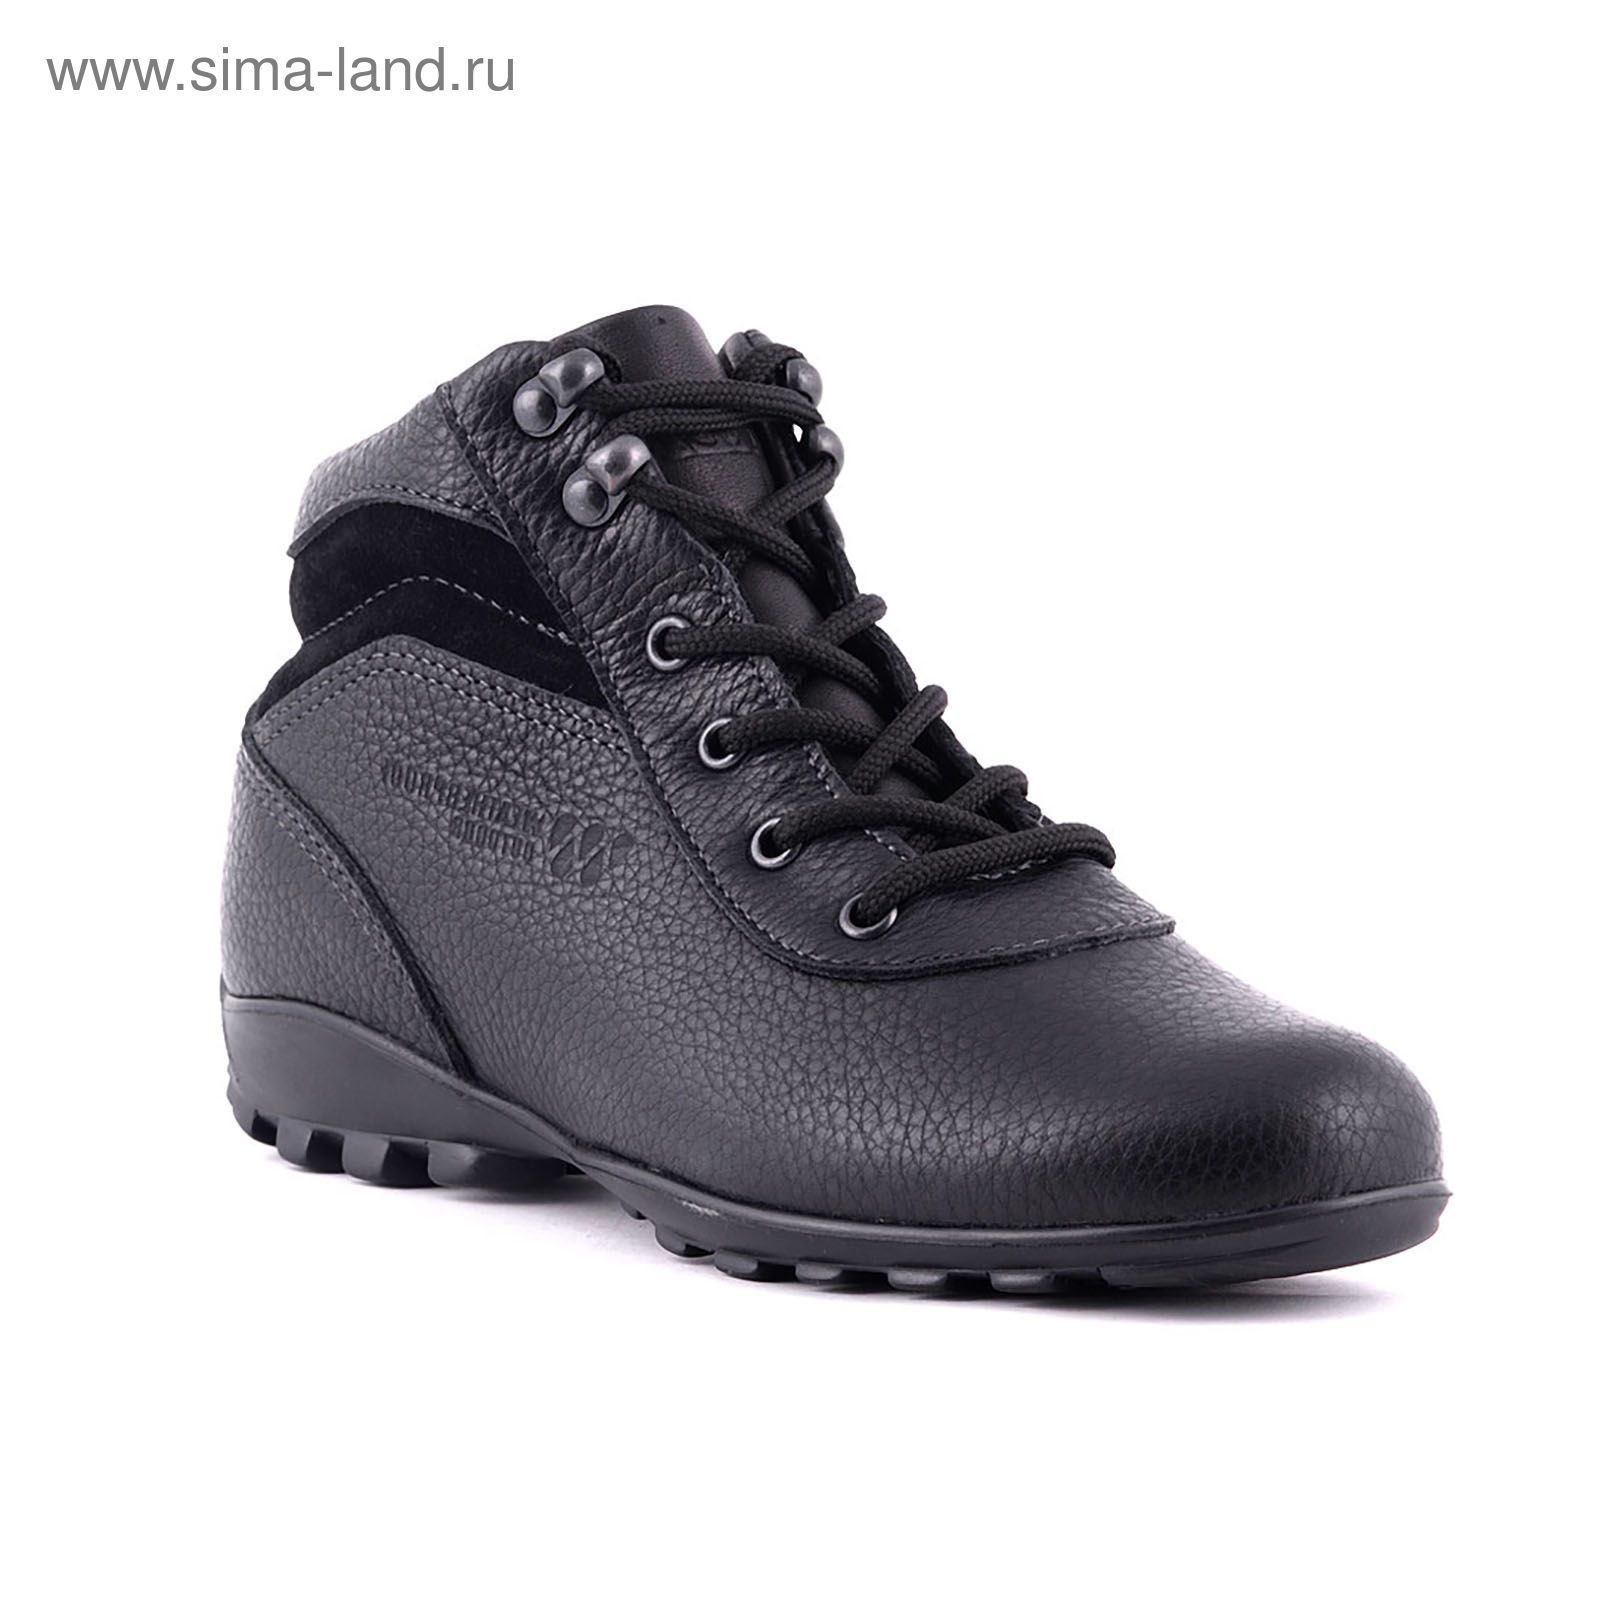 Ботинки TREK Спринт 93-01 капровелюр (черный) (р.36)